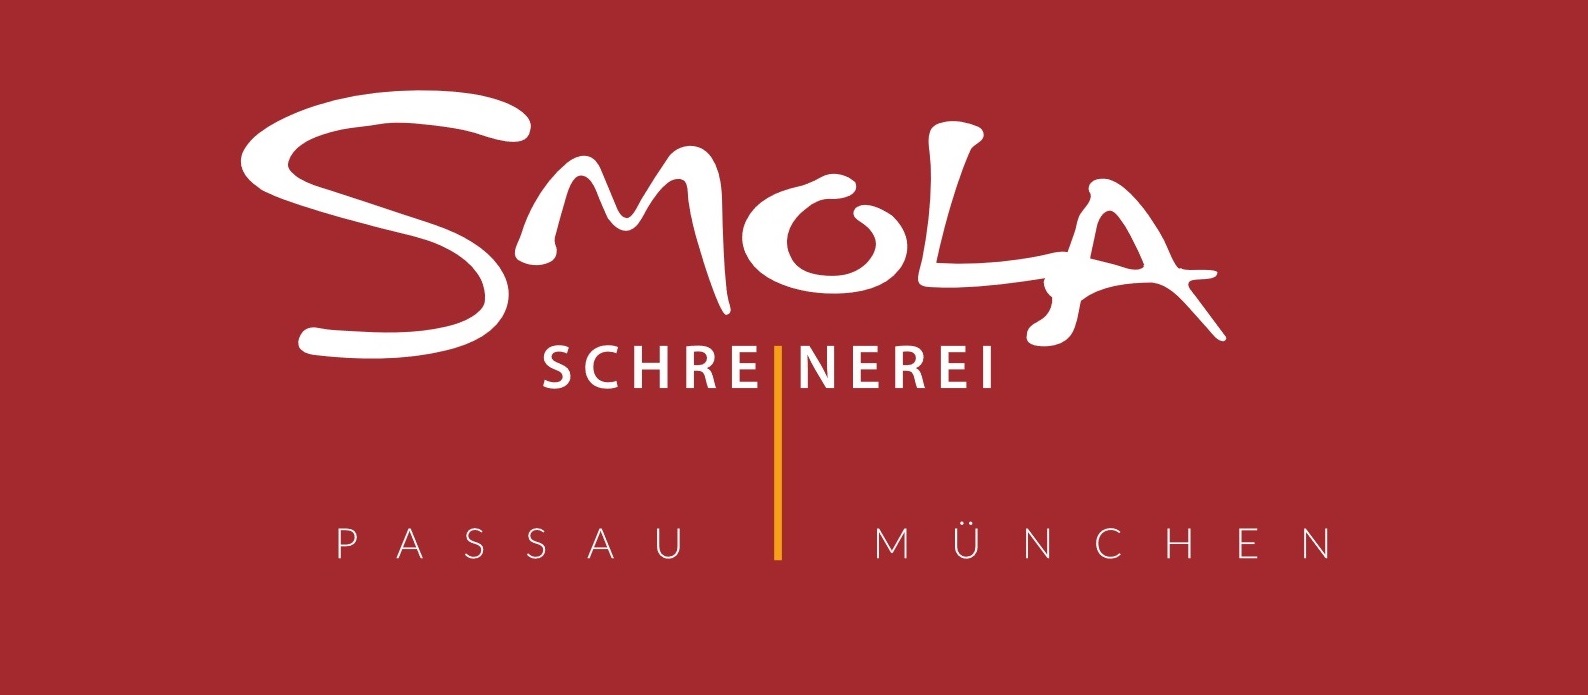 Smola Schreinerei GmbH & Co.KG